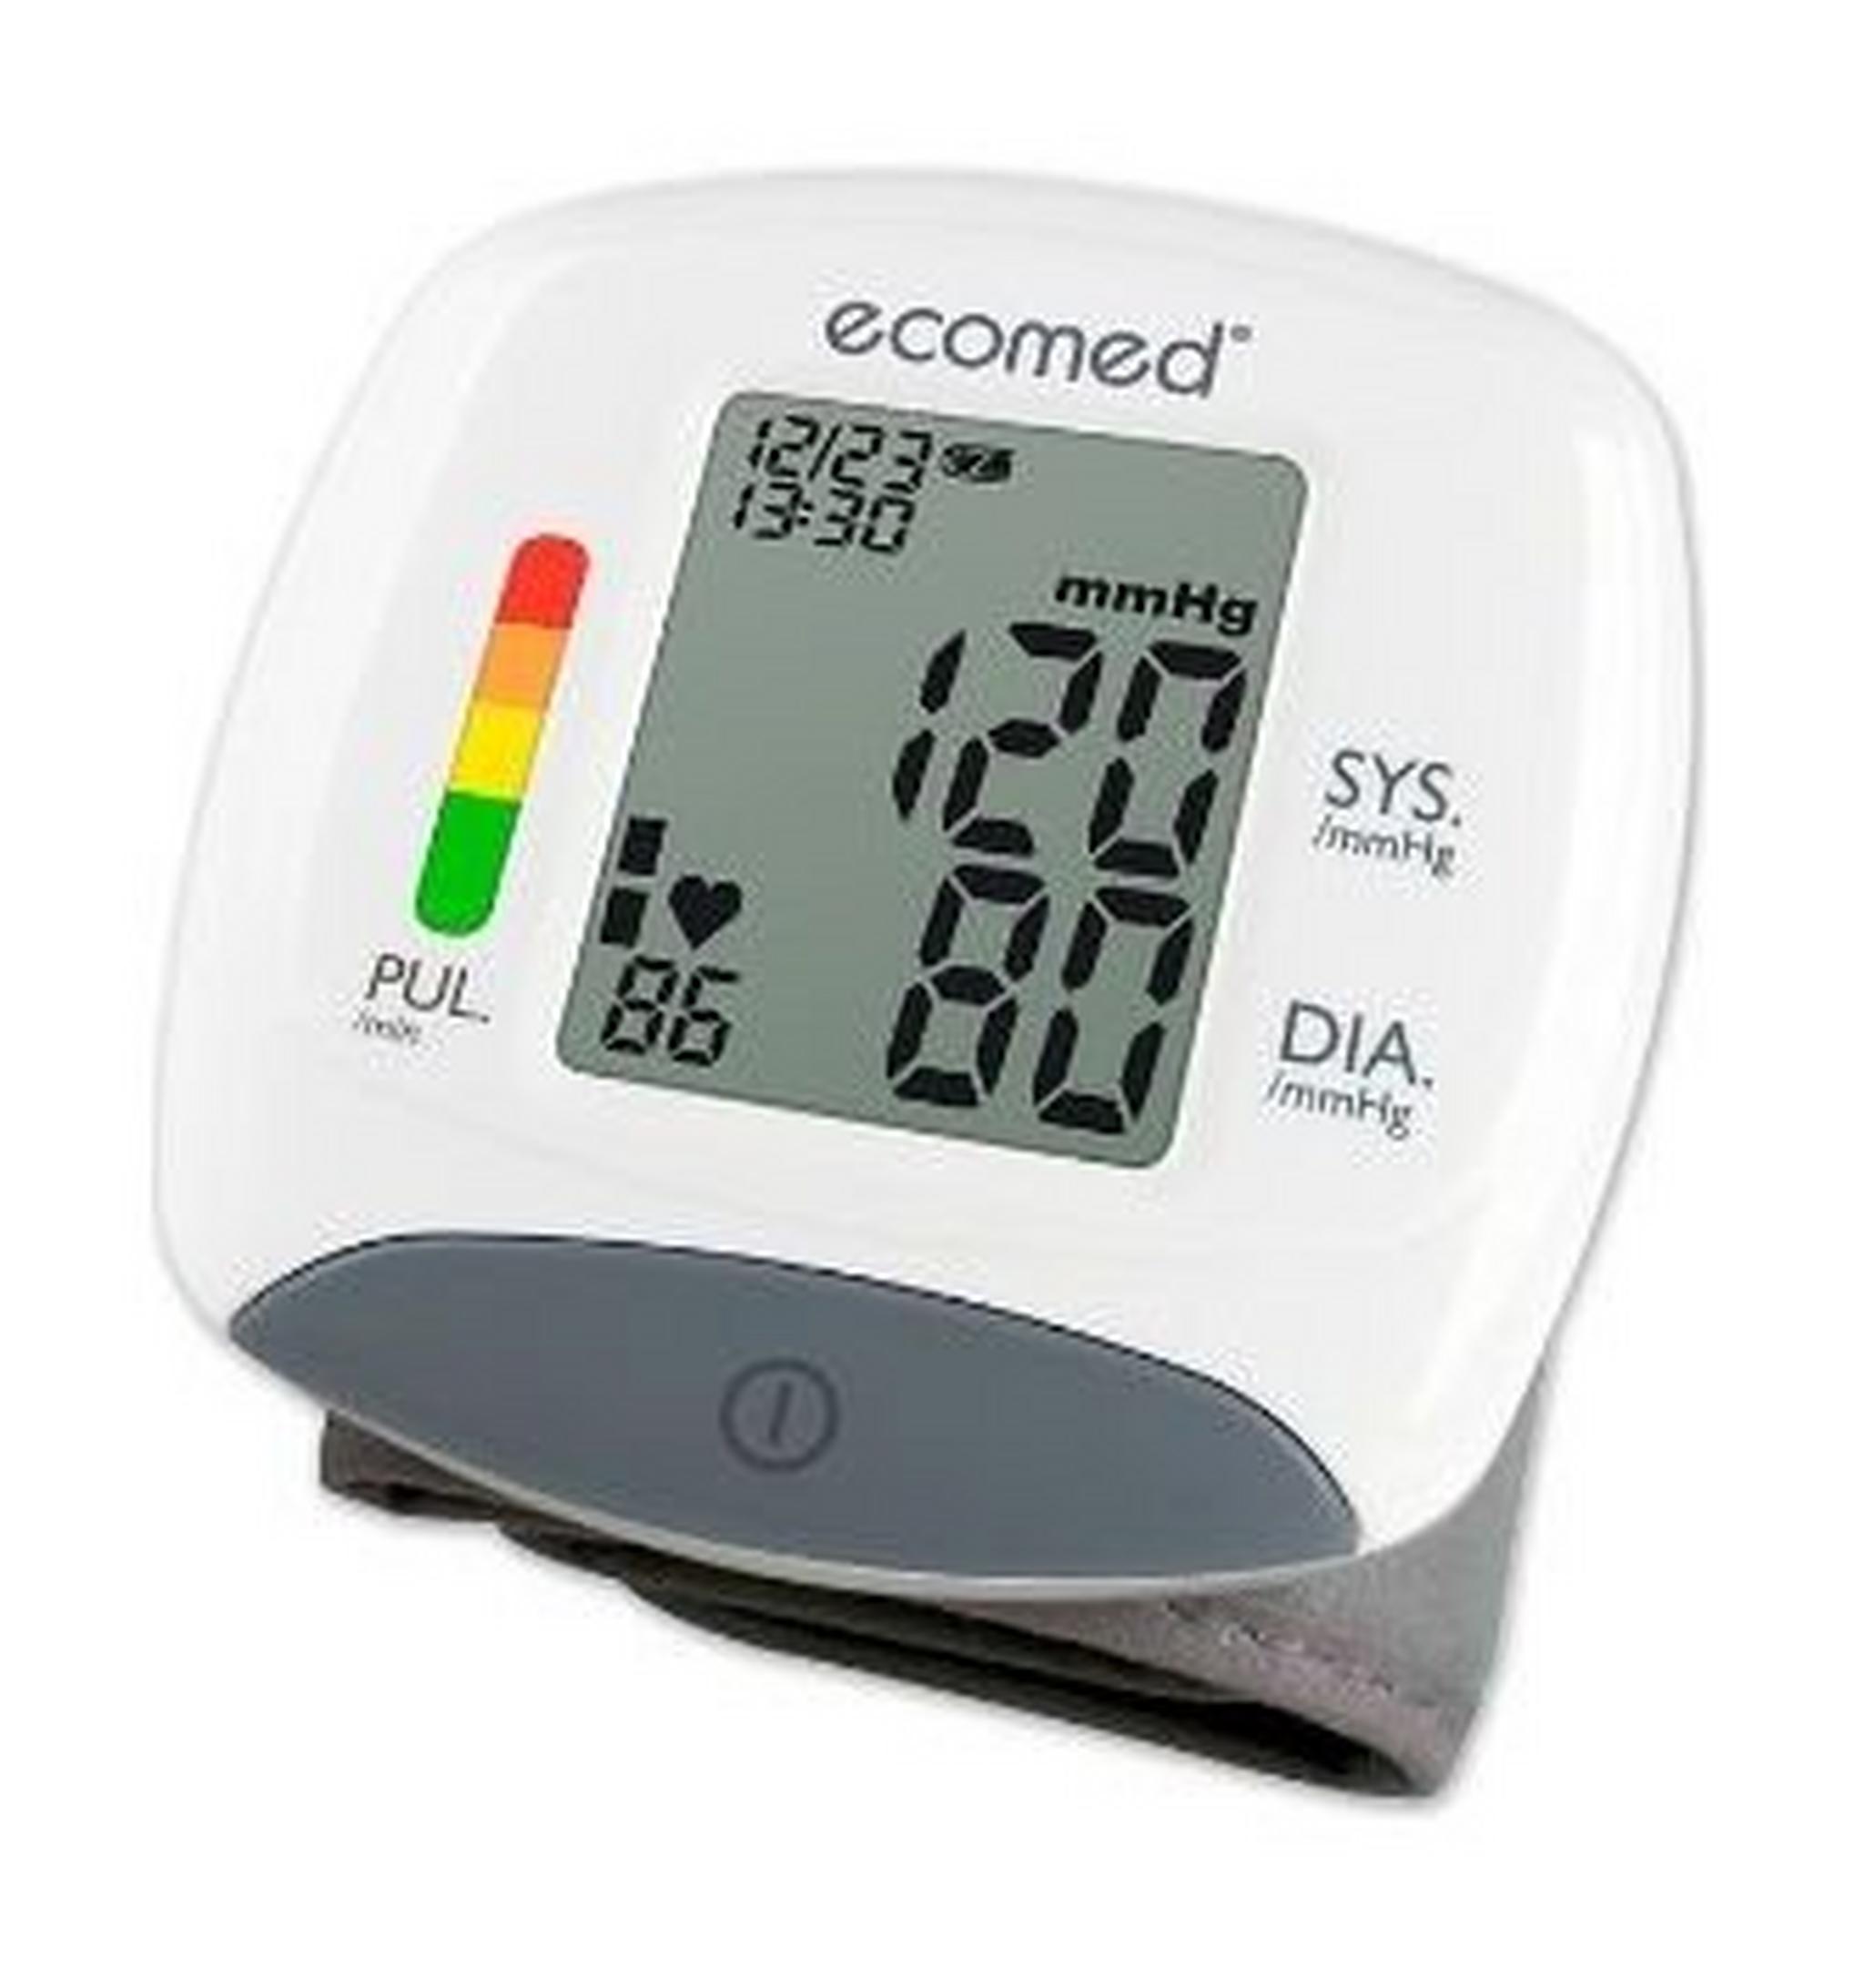 جهاز قياس ضغط الدم من خلال الرسغ بشاشة بيانات من ميديسانا (BW-82E)